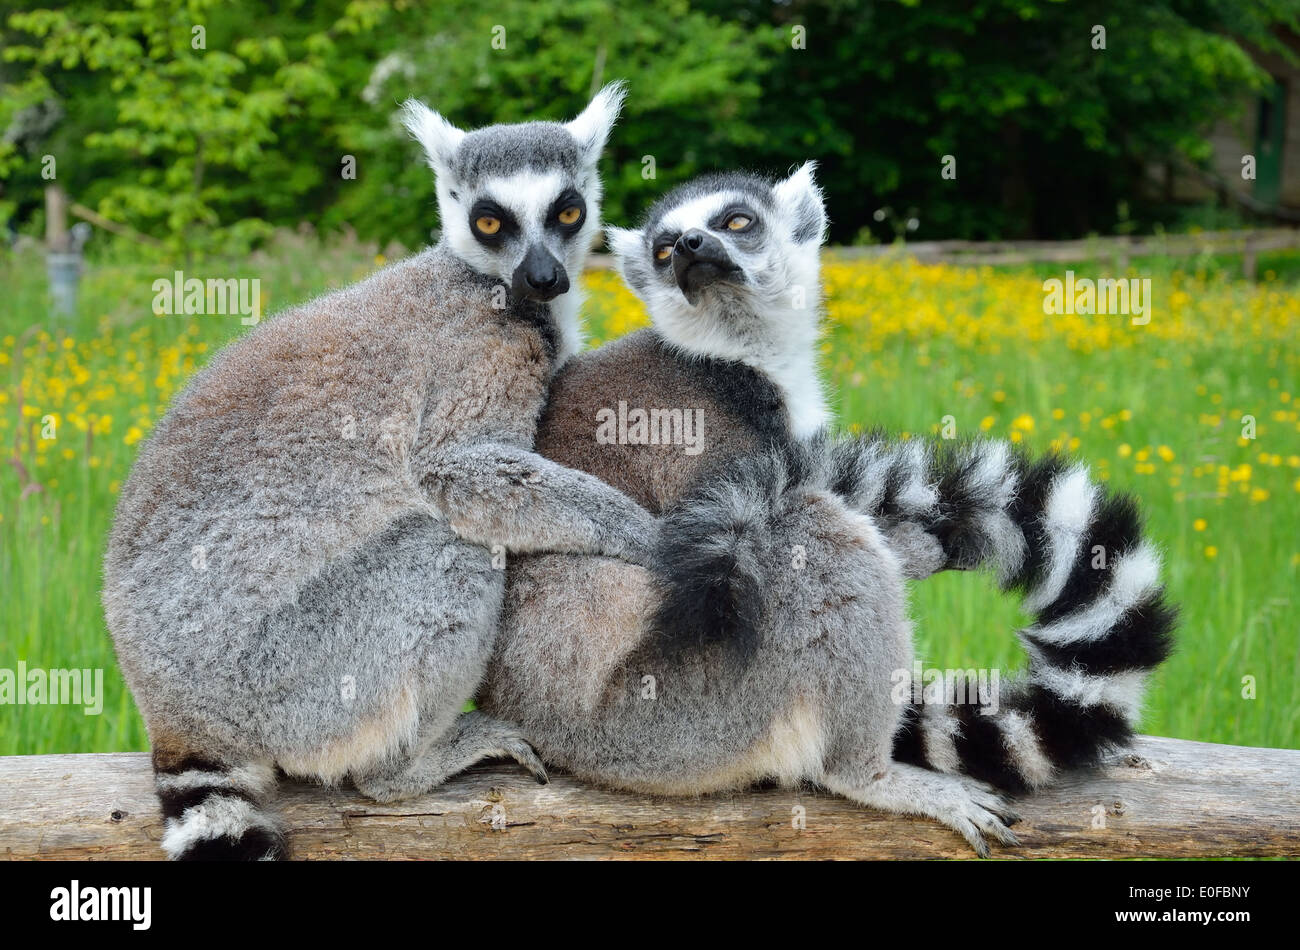 Huddle of lemurs outdoors Stock Photo